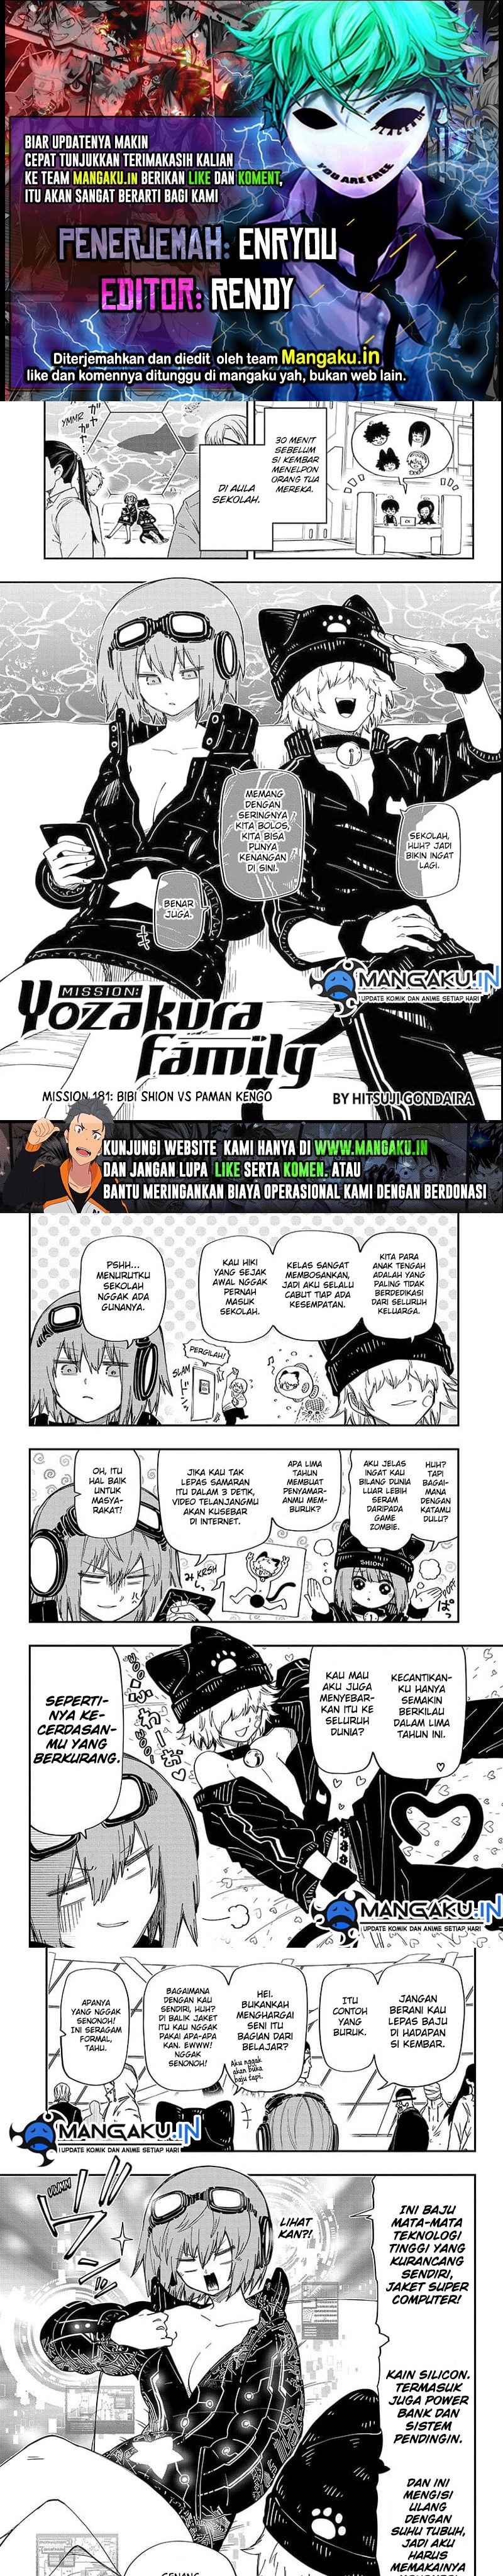 Mission Yozakura Family Chapter 181